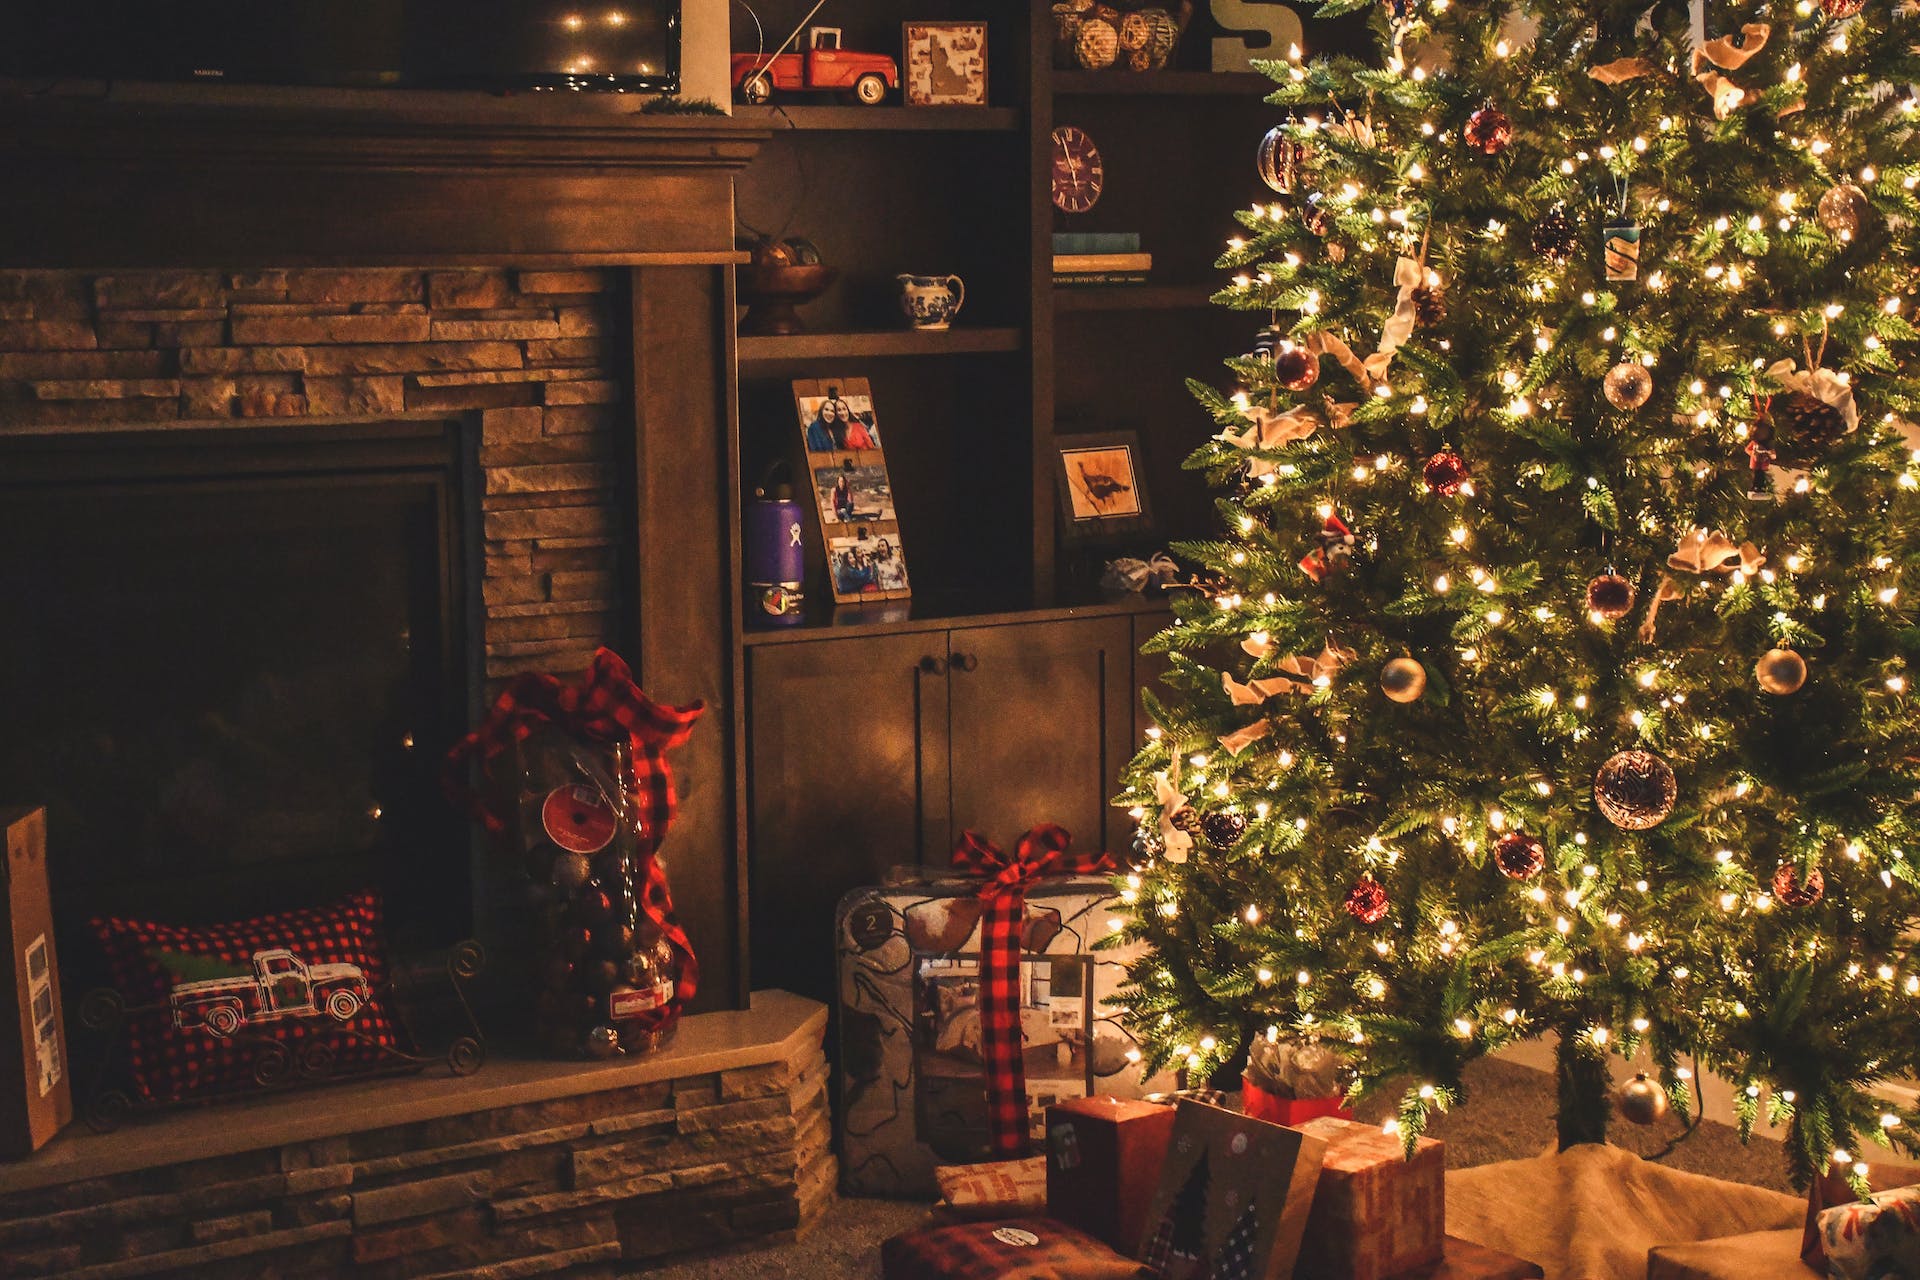 Weihnachtsbaum mit Geschenken. | Quelle: Pexels